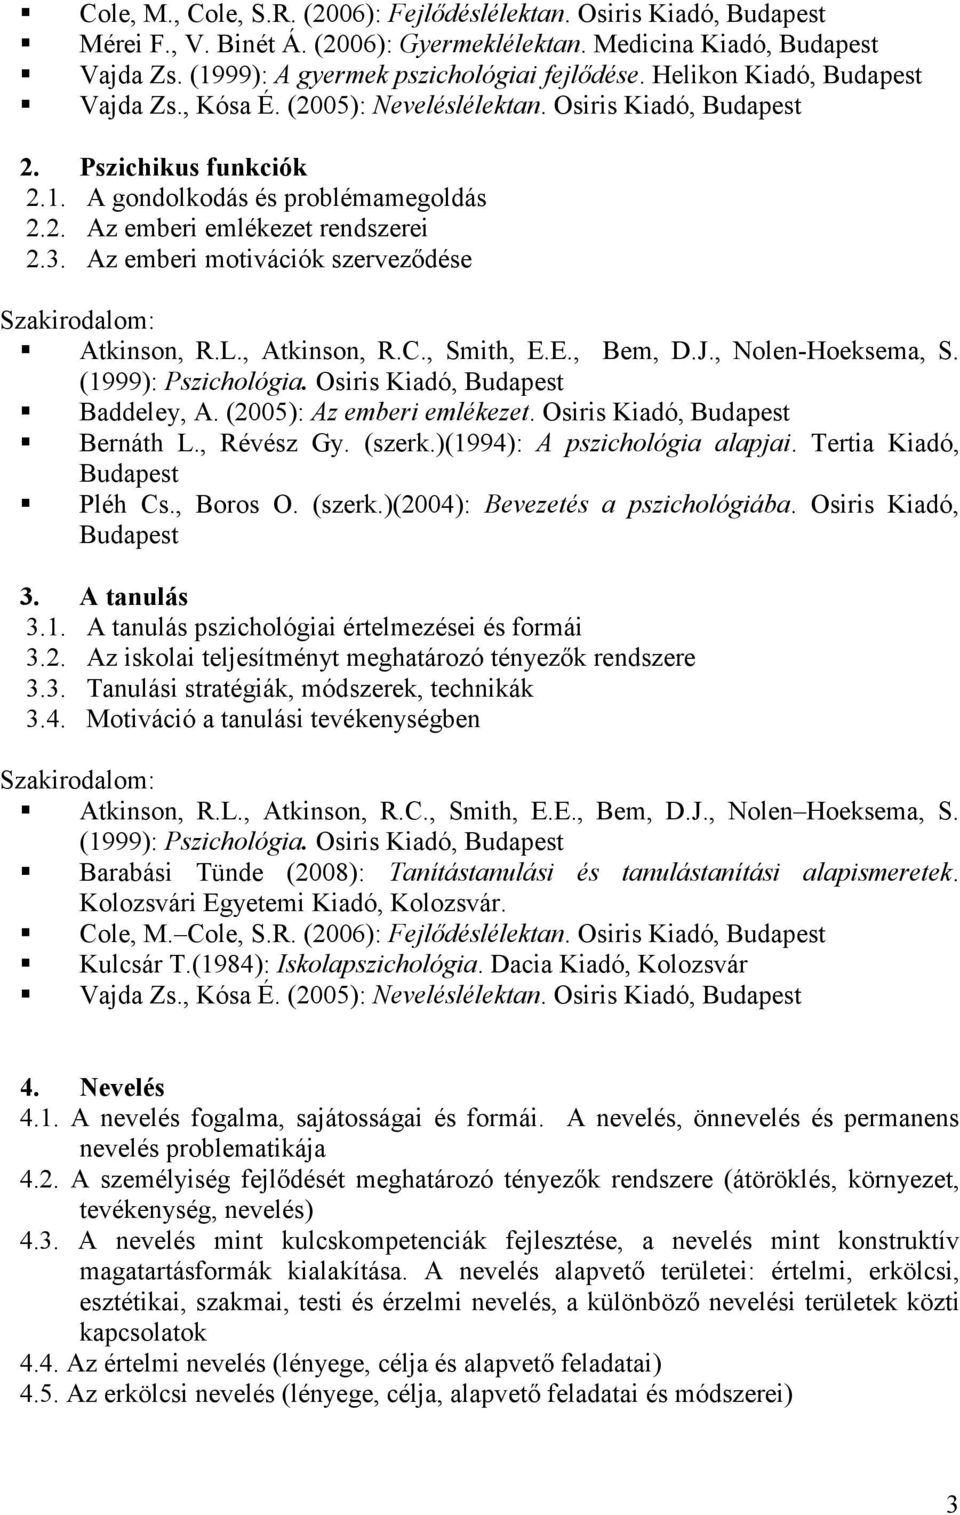 Az emberi motivációk szervezıdése Atkinson, R.L., Atkinson, R.C., Smith, E.E., Bem, D.J., Nolen-Hoeksema, S. (1999): Pszichológia. Osiris Kiadó, Budapest Baddeley, A. (2005): Az emberi emlékezet.